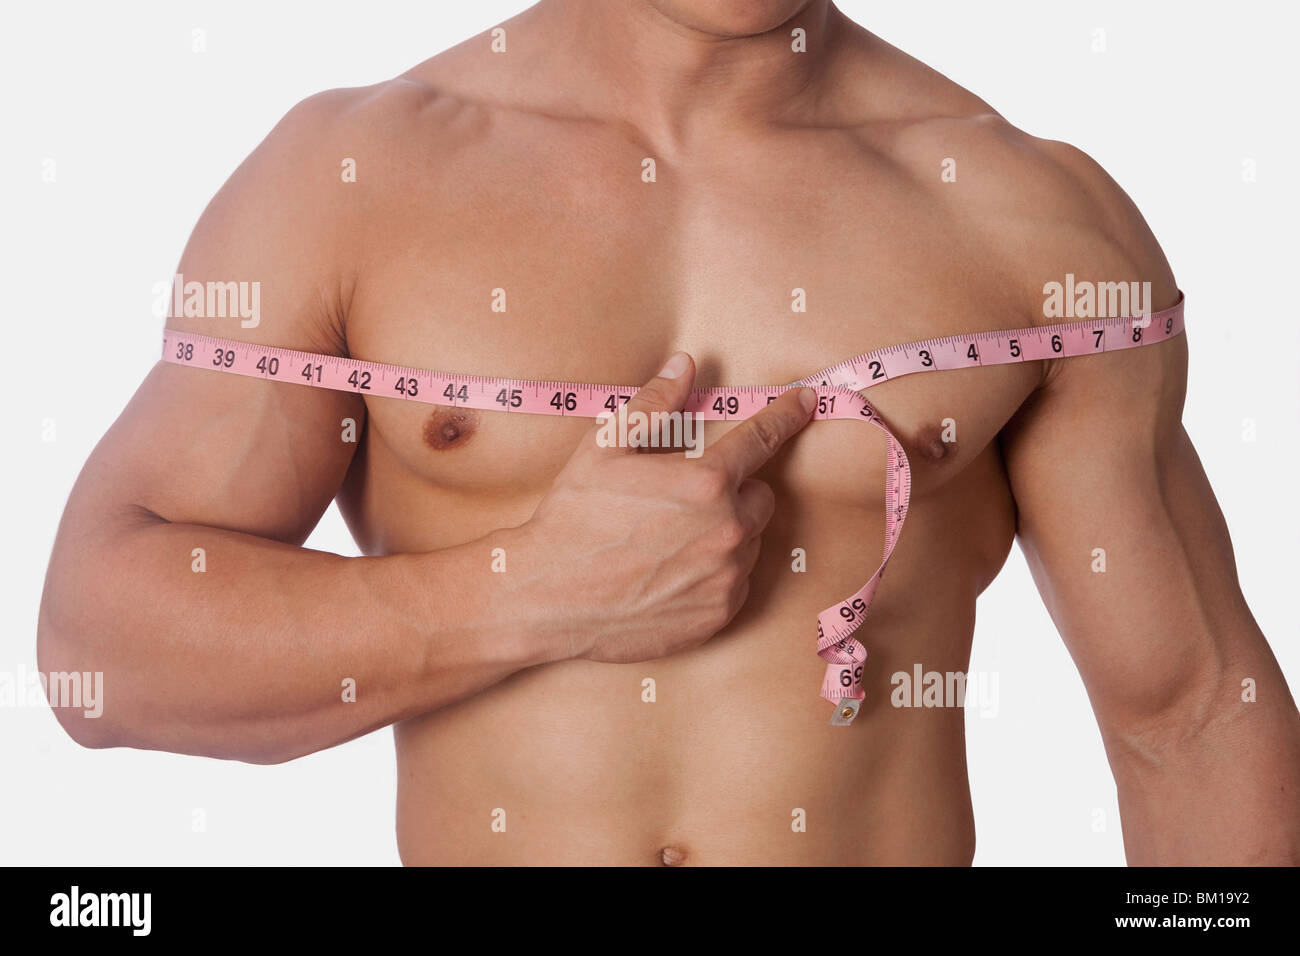 ширина груди у мужчин фото 3